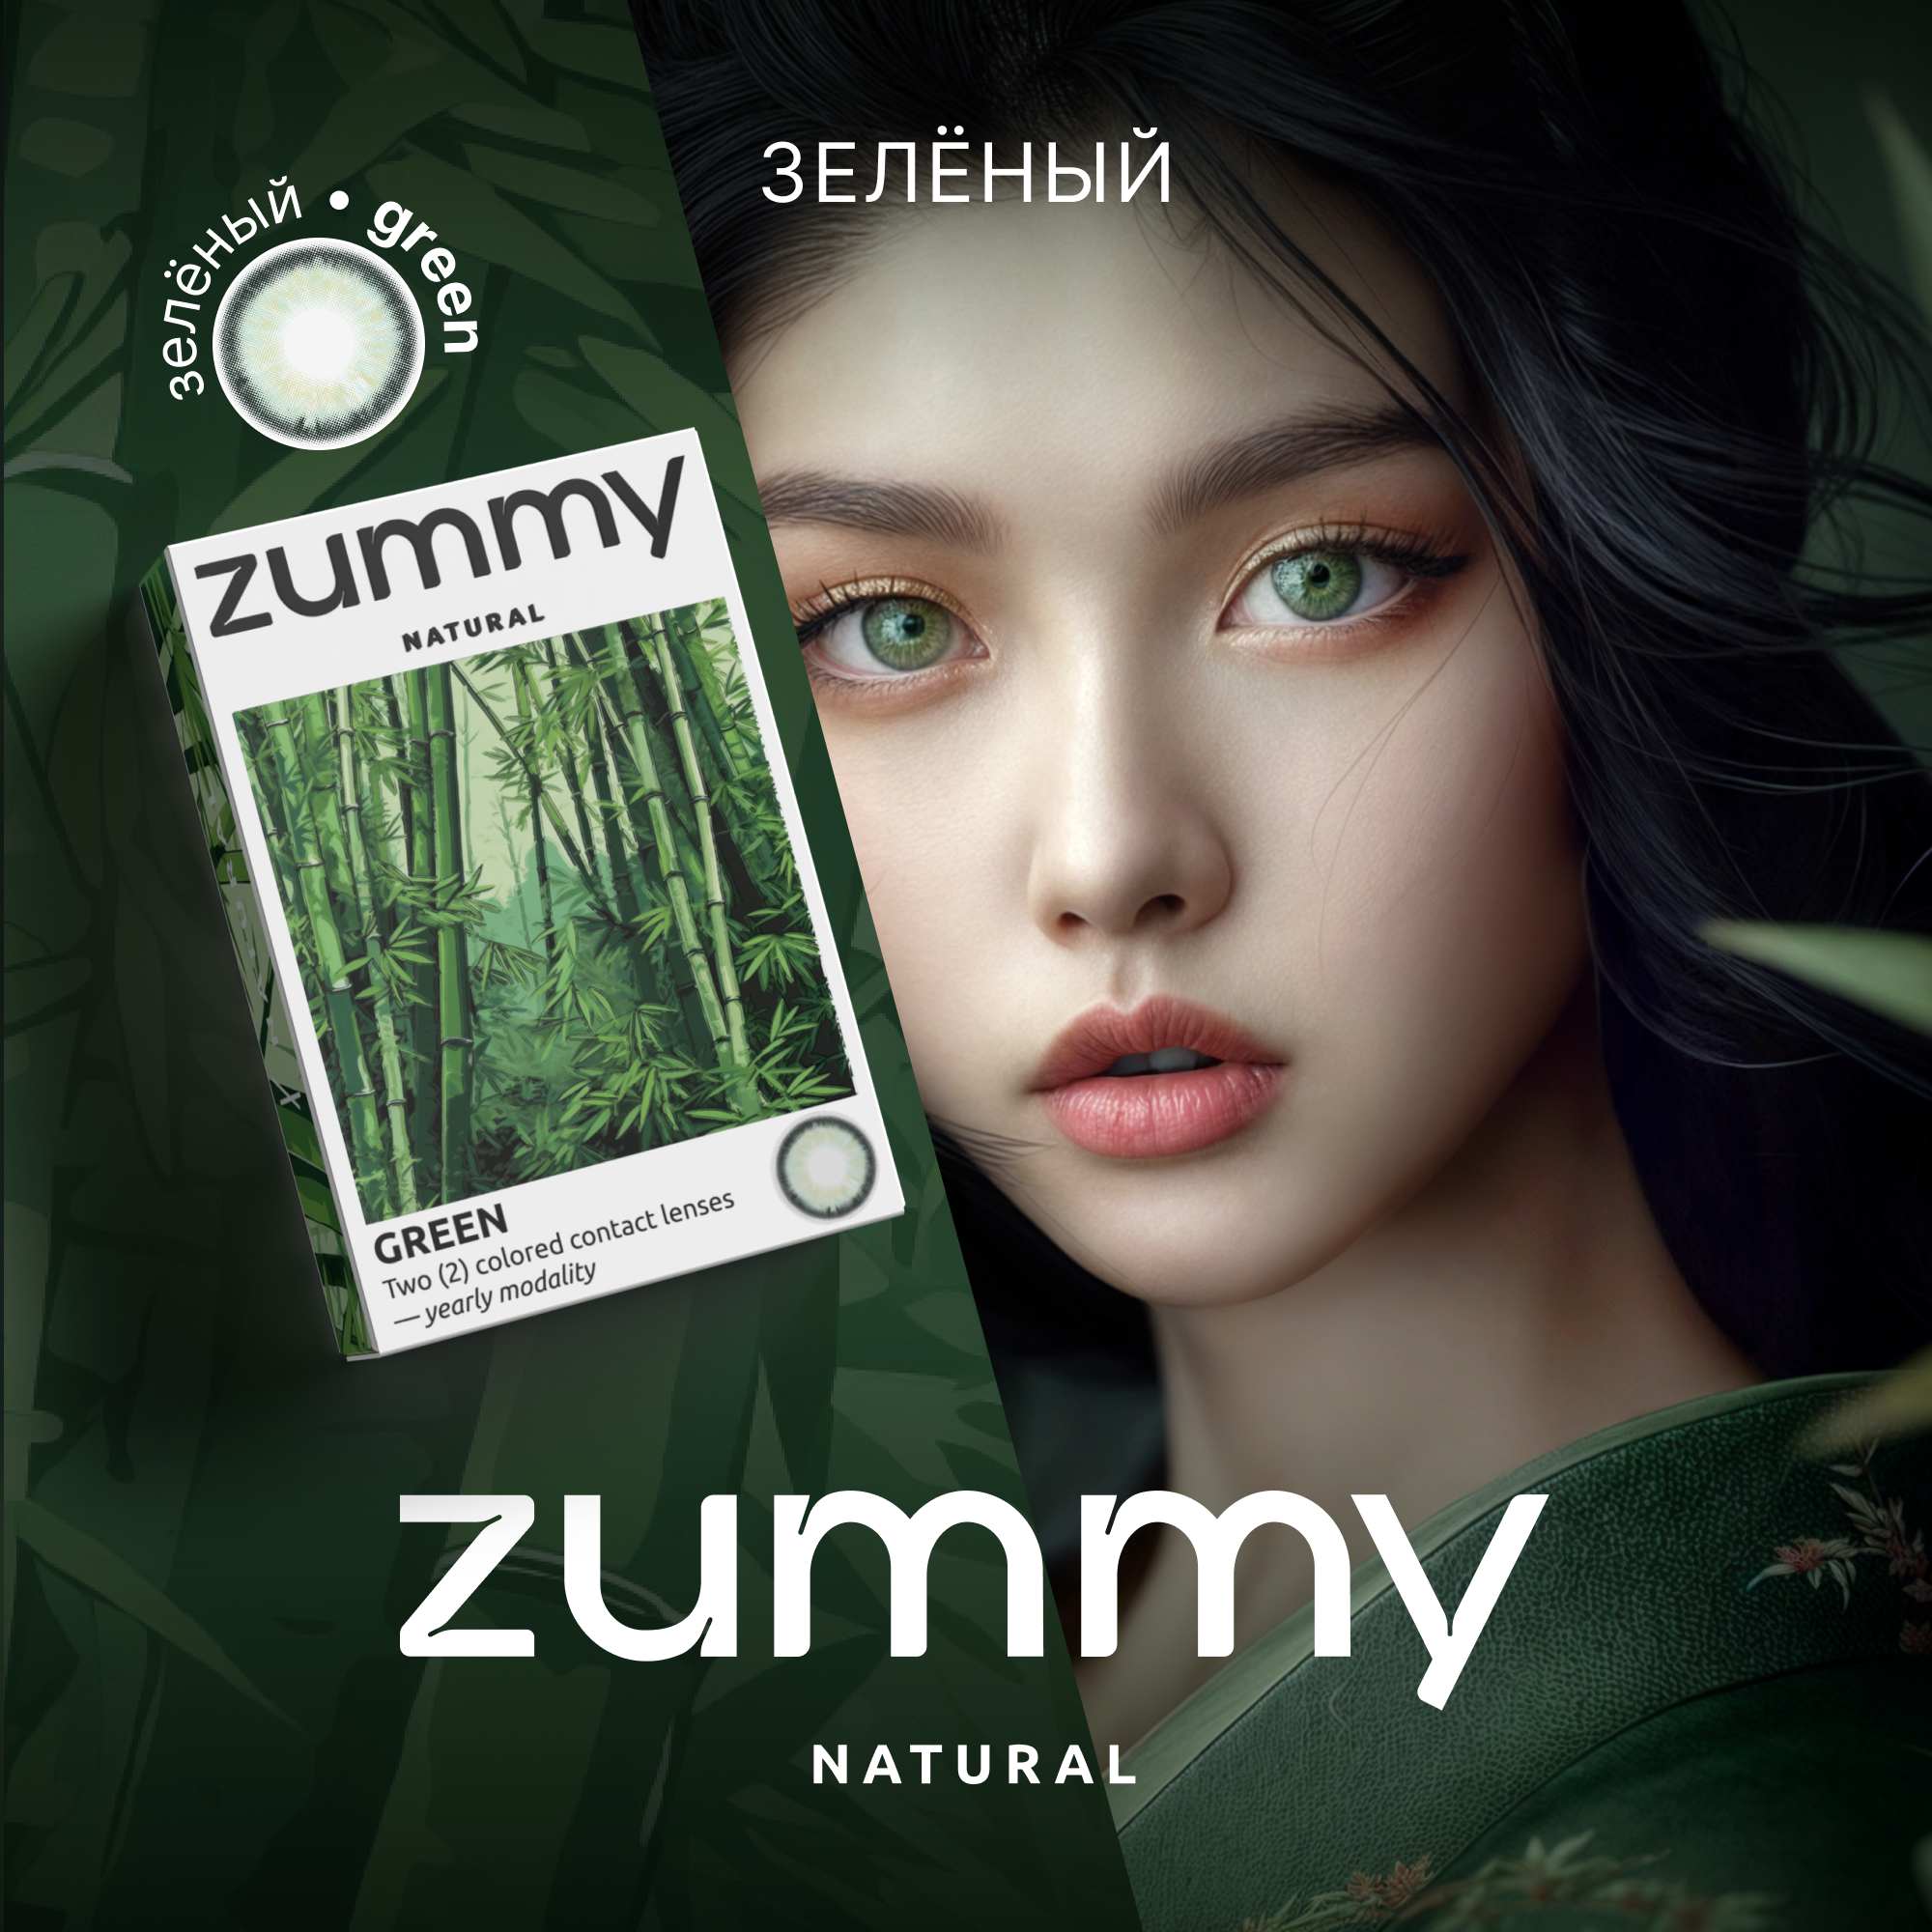 Цветные линзы Zummy Natural зеленые 0,0, радиус кривизны 8,6